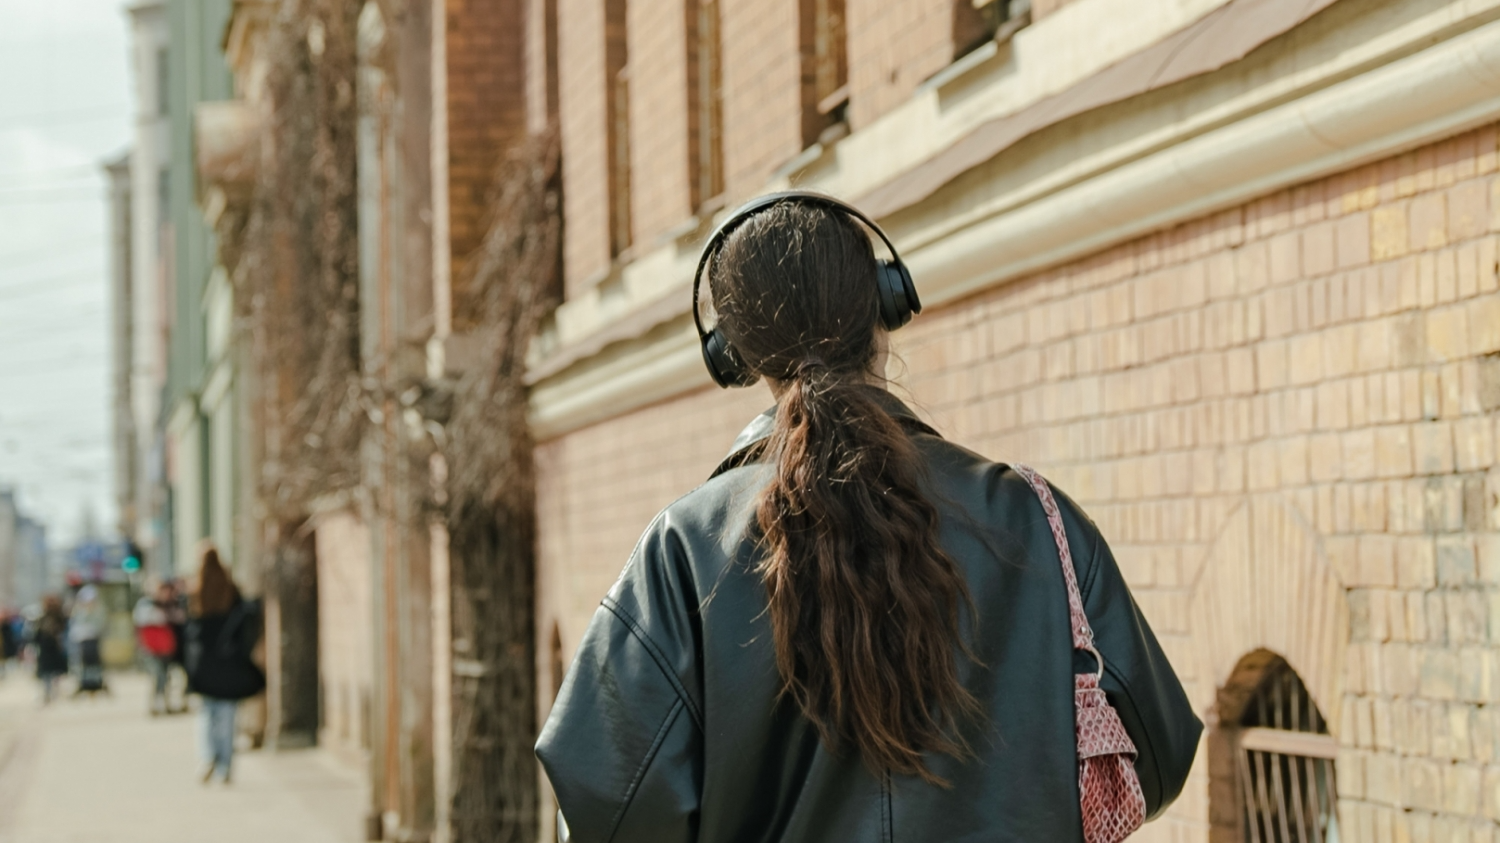 Meitene iet pa ielu un austiņās klausās mūziku